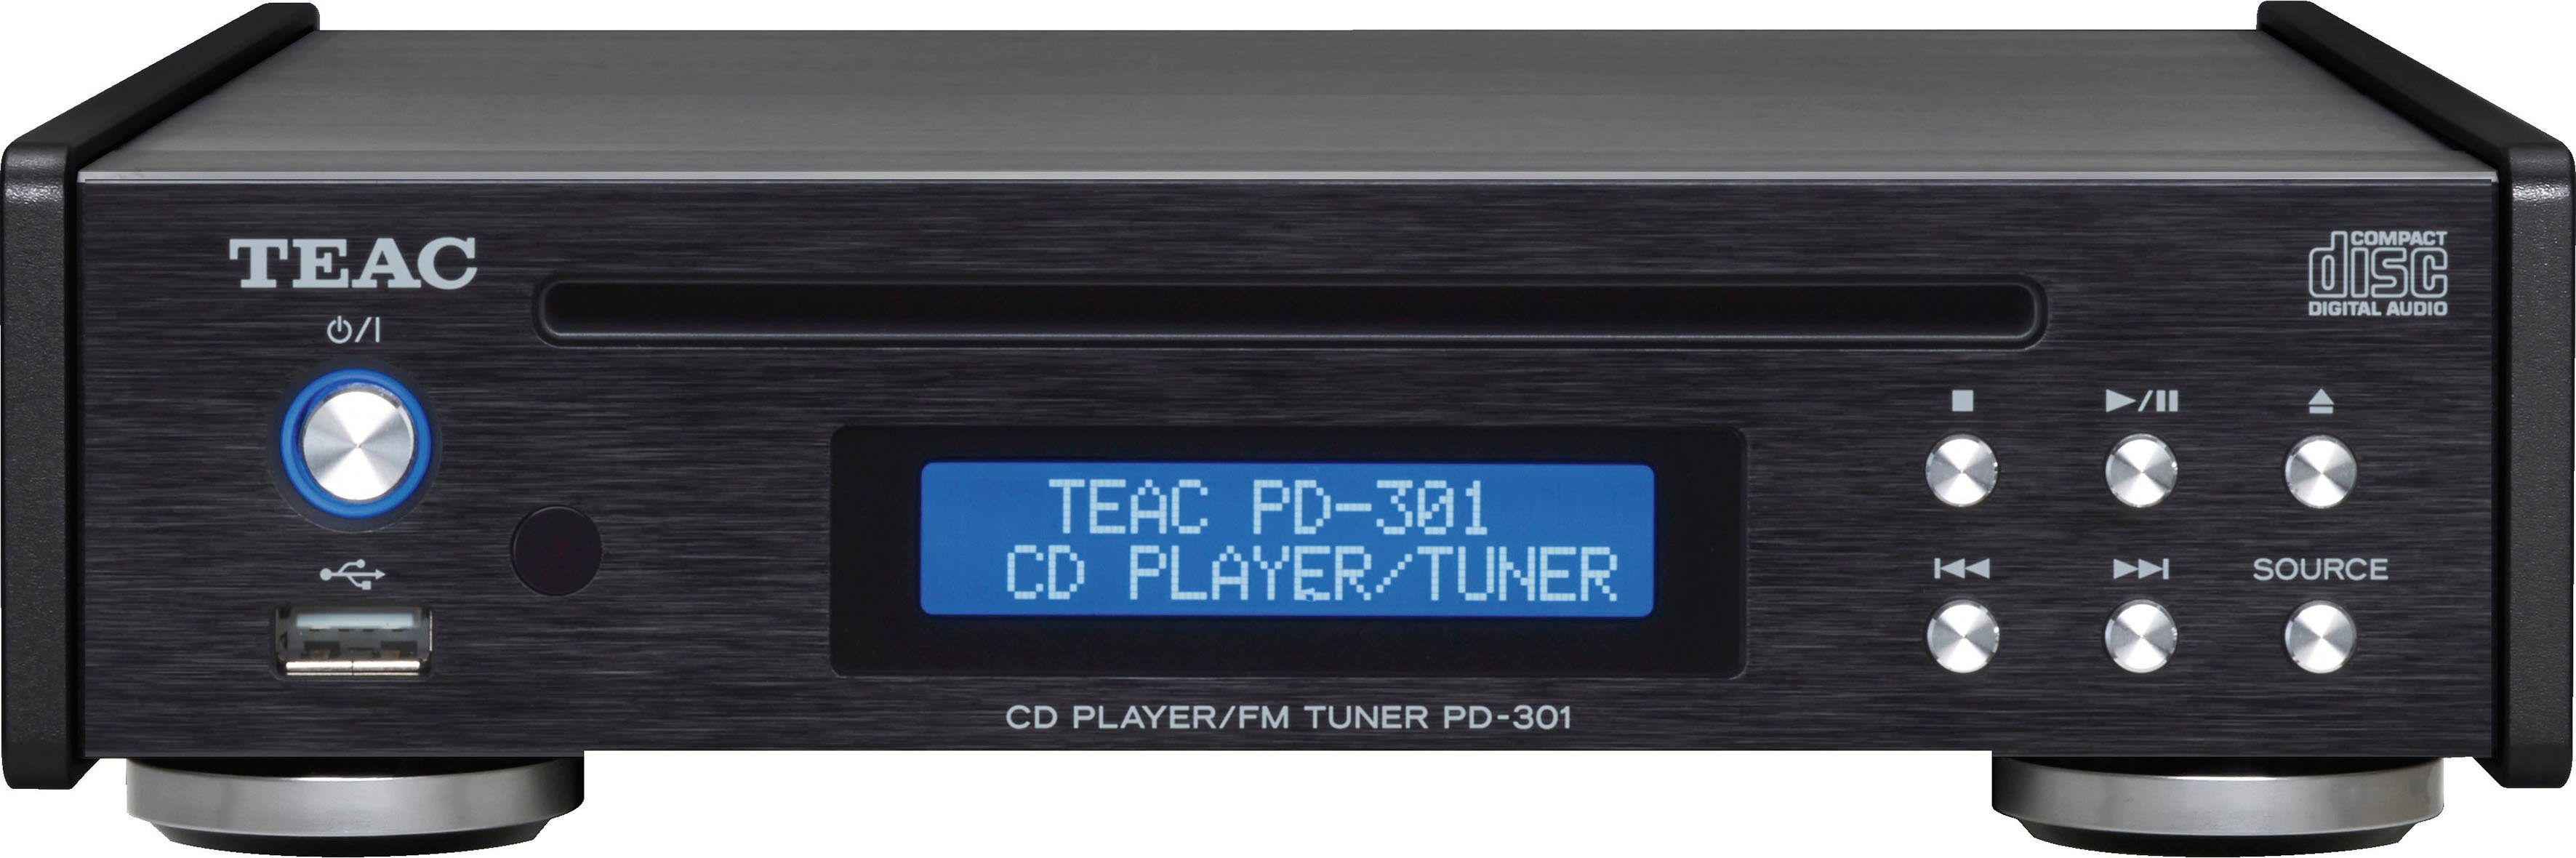 Stoutmoedig vliegtuig eindeloos TEAC Cd-speler PD-301DAB-X USB-muziekspeler en DAB/FM-tuner in de online  winkel | OTTO